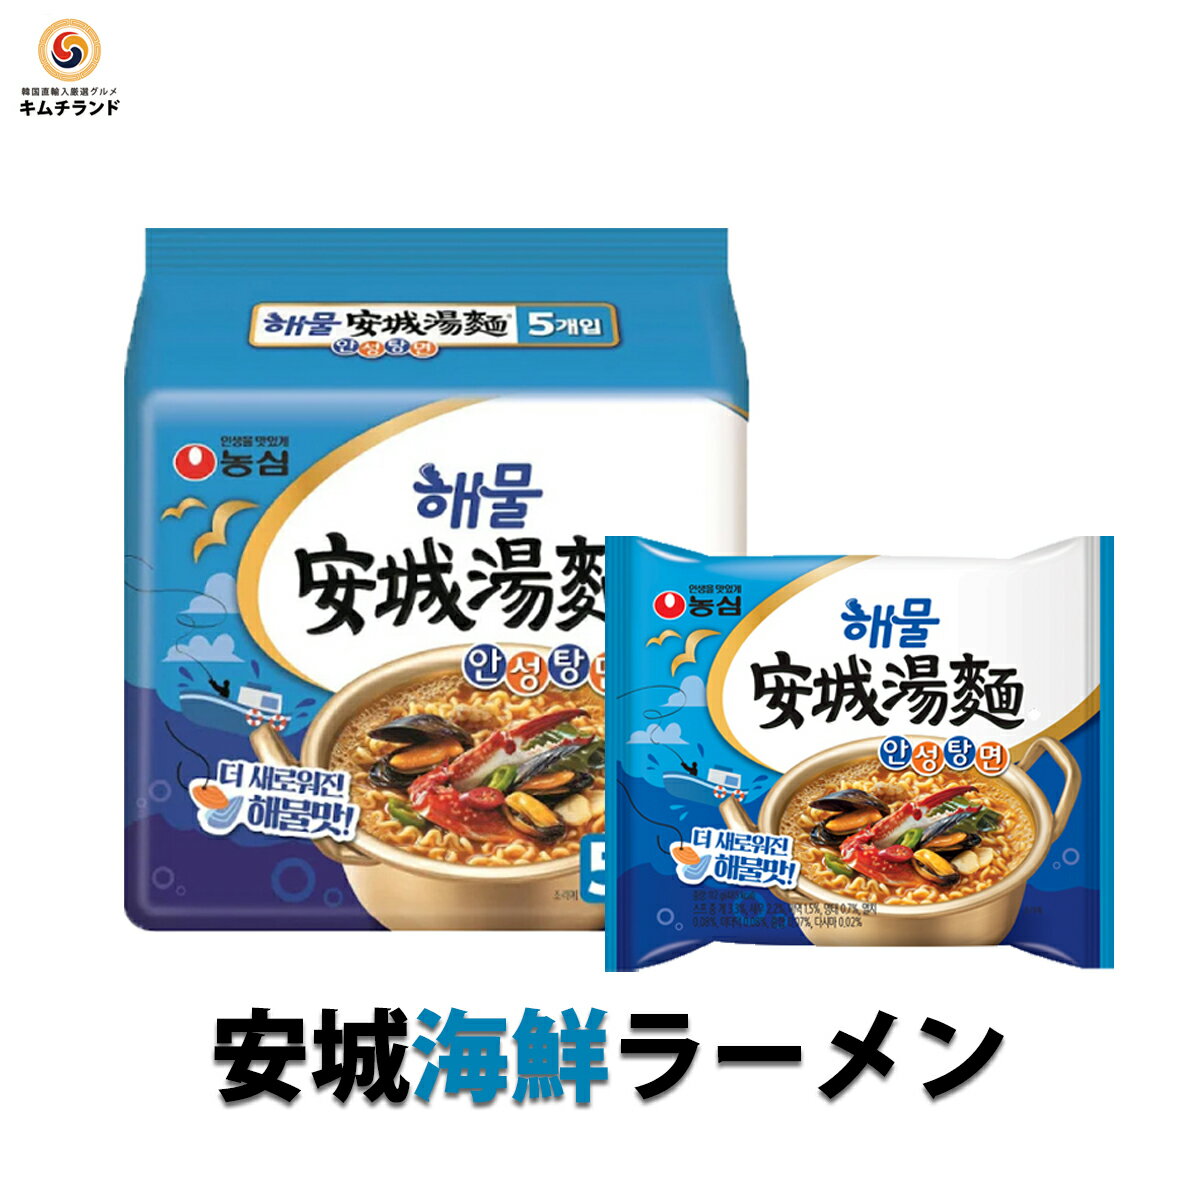 【 海鮮安城湯麺 10袋(5袋×2)】 韓国 ノンシム NO